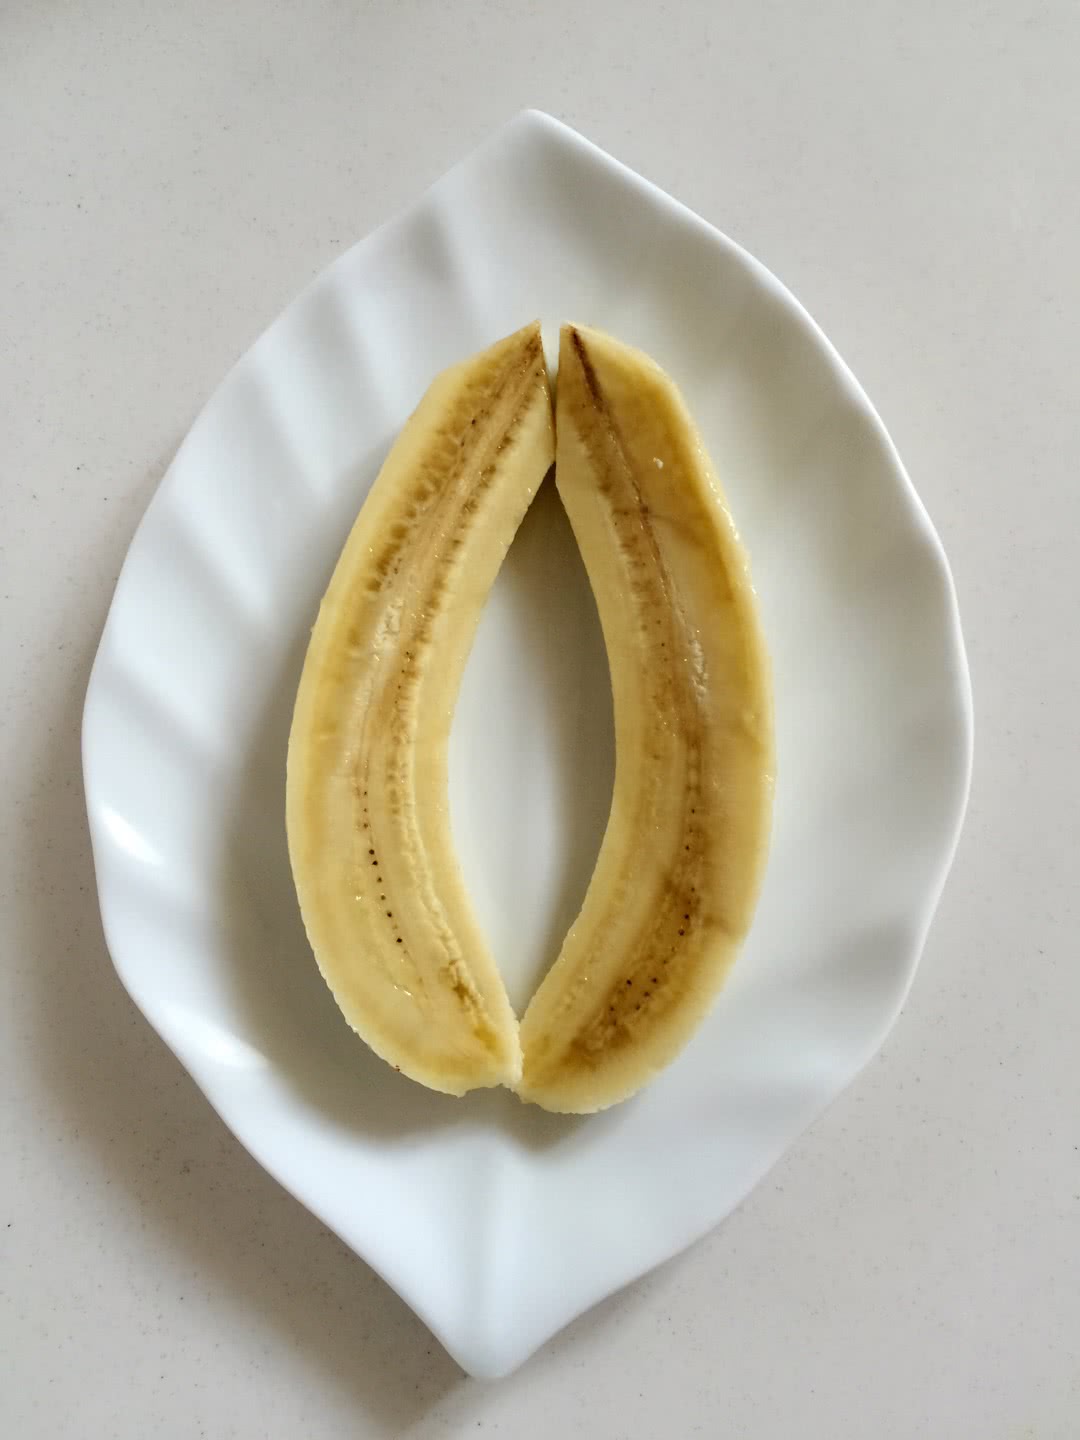 把香蕉对半切开